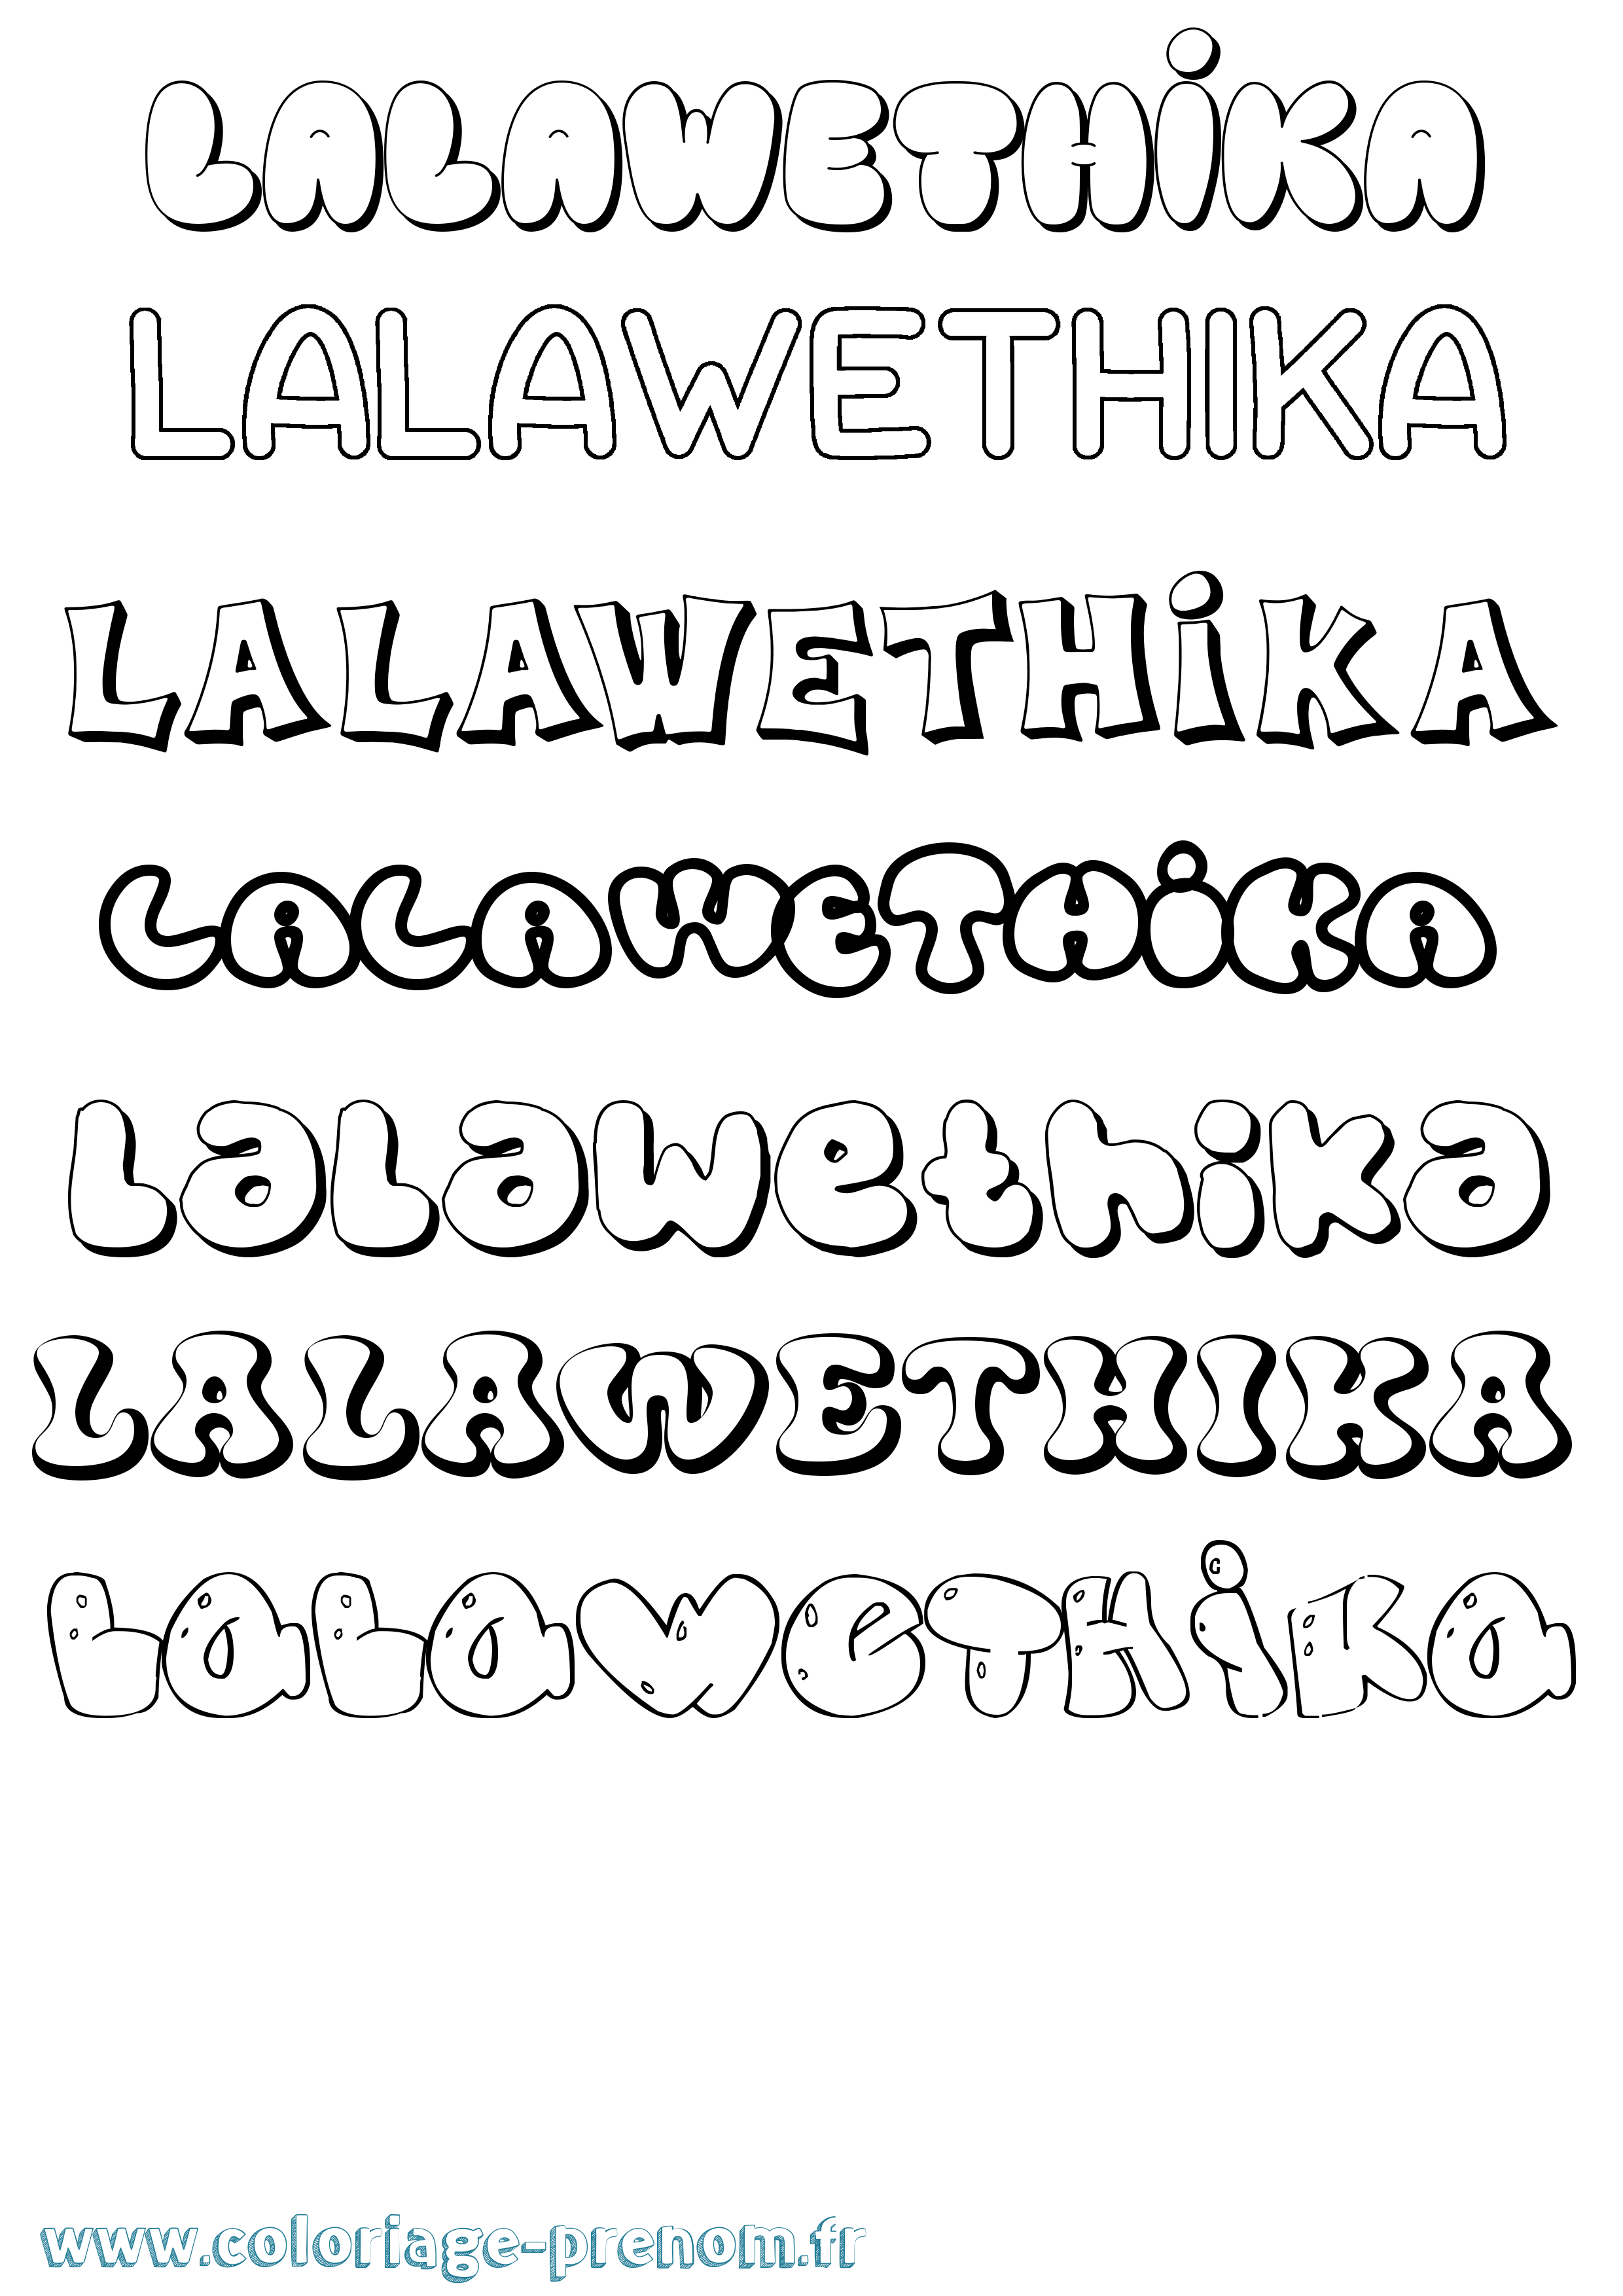 Coloriage prénom Lalawethika Bubble